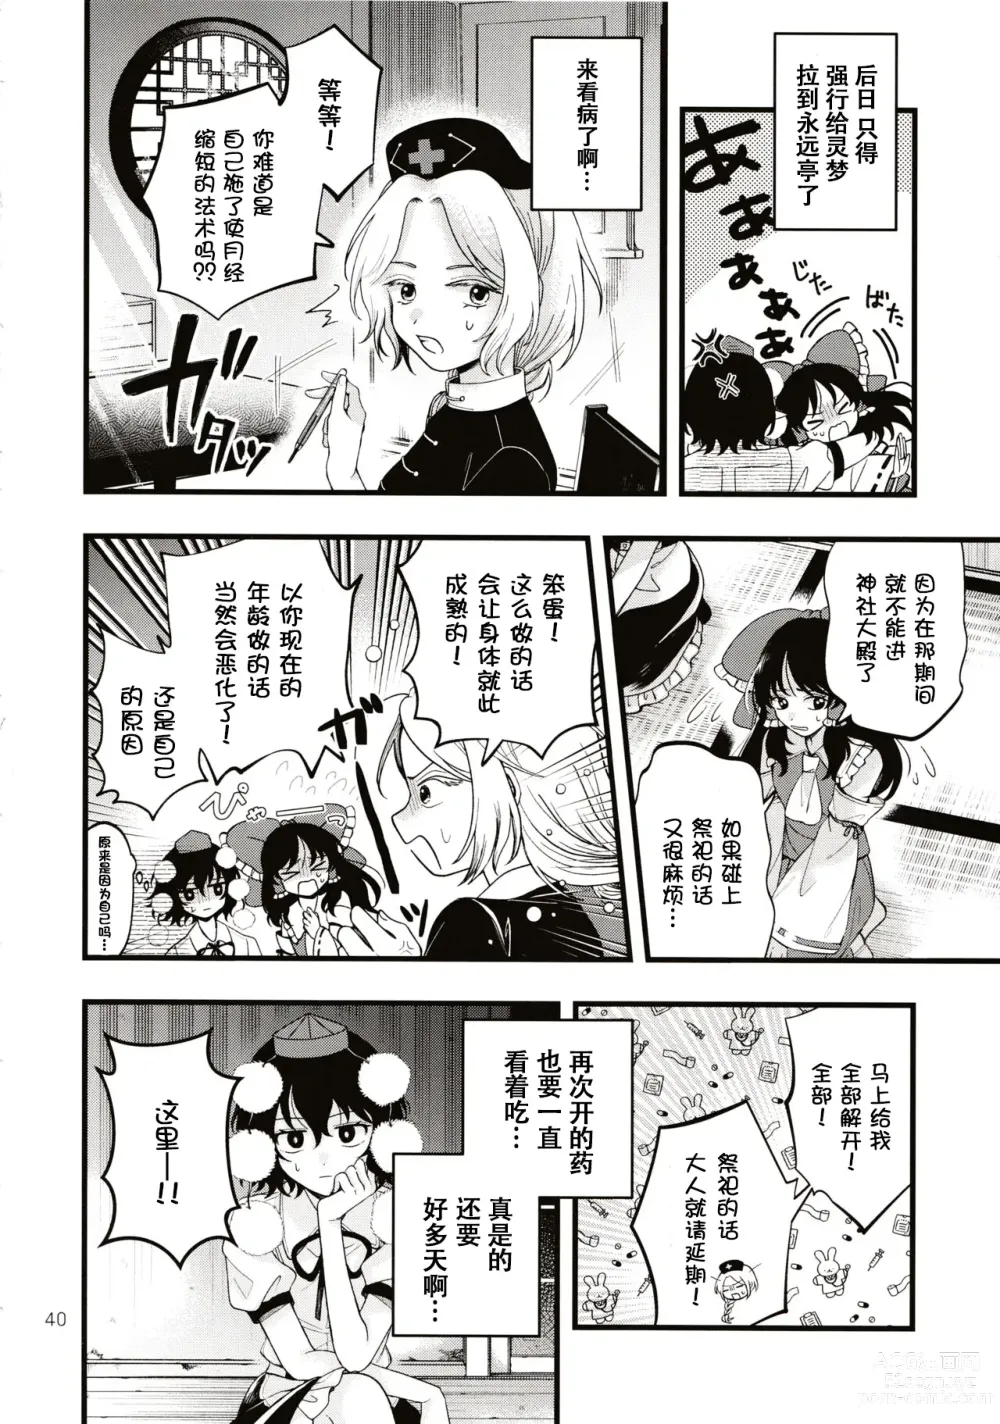 Page 39 of doujinshi Rubeus no Kankai